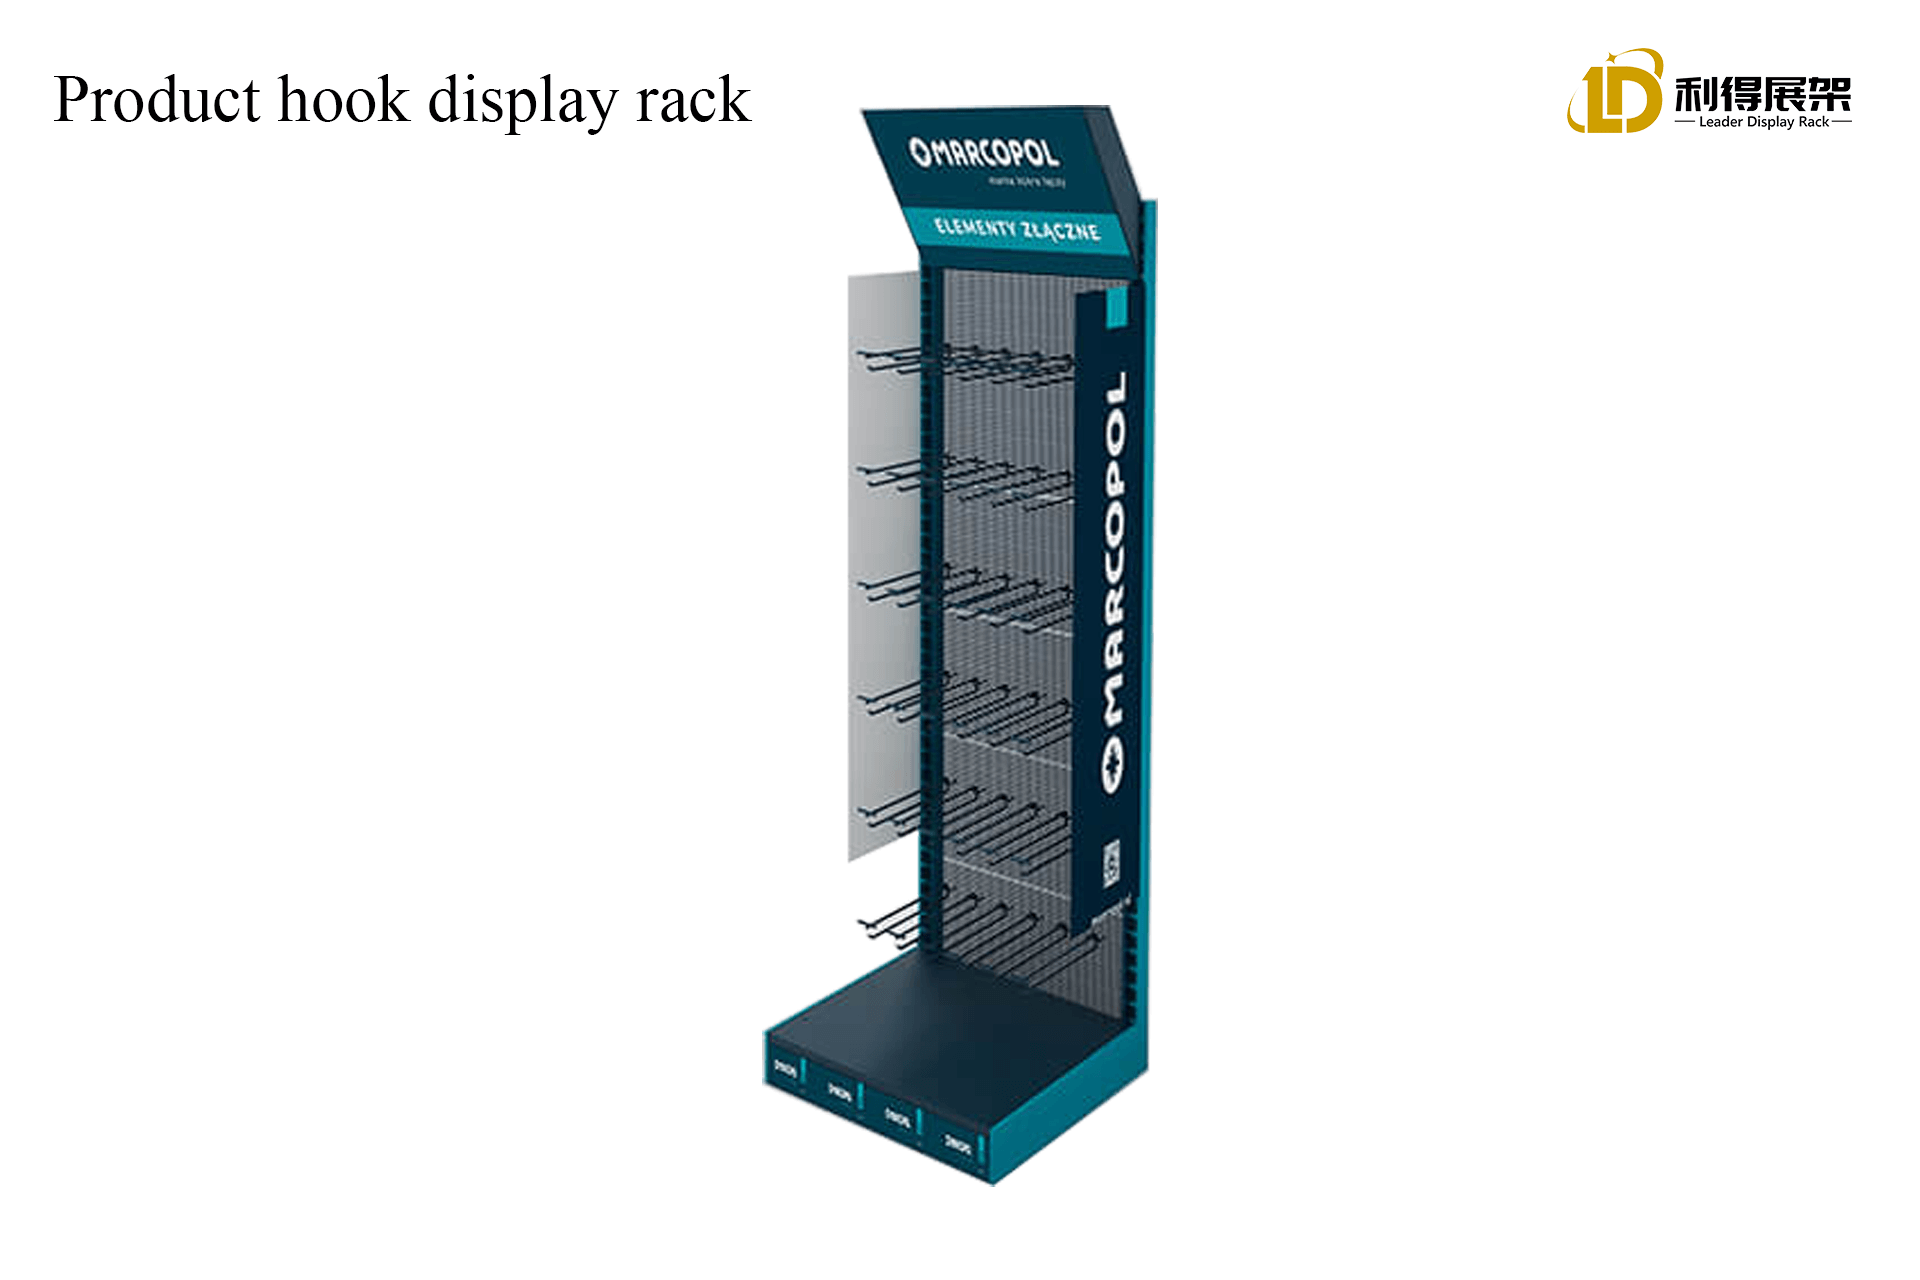 Product hook display rack